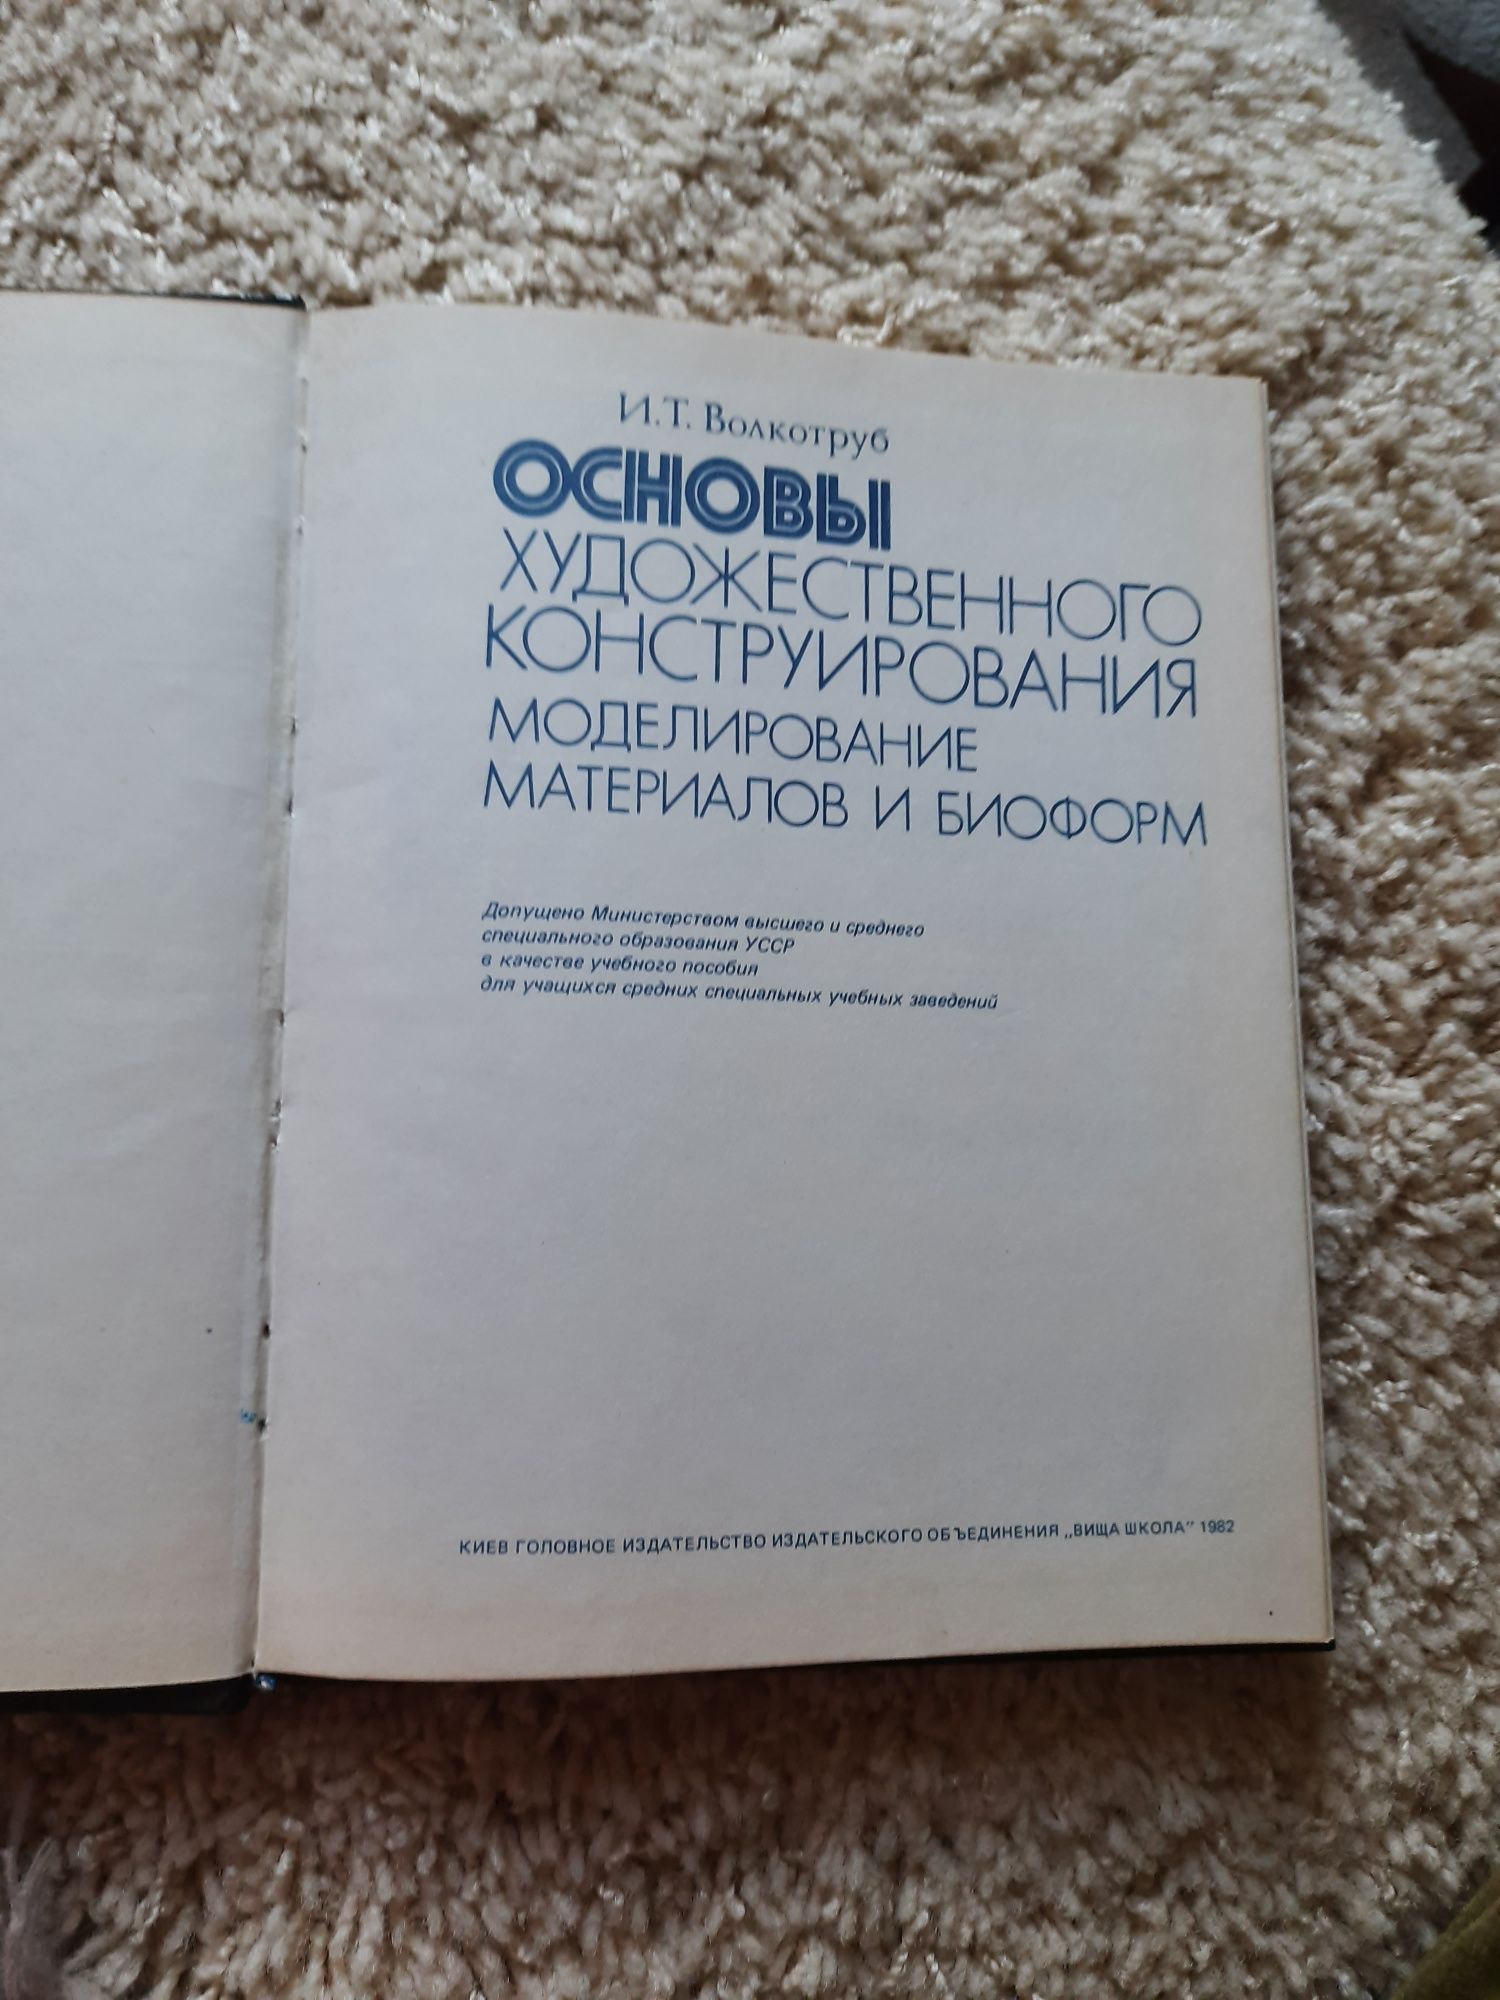 Основы художественного конструирования
И.Т.Волкотруб, 1982 г.